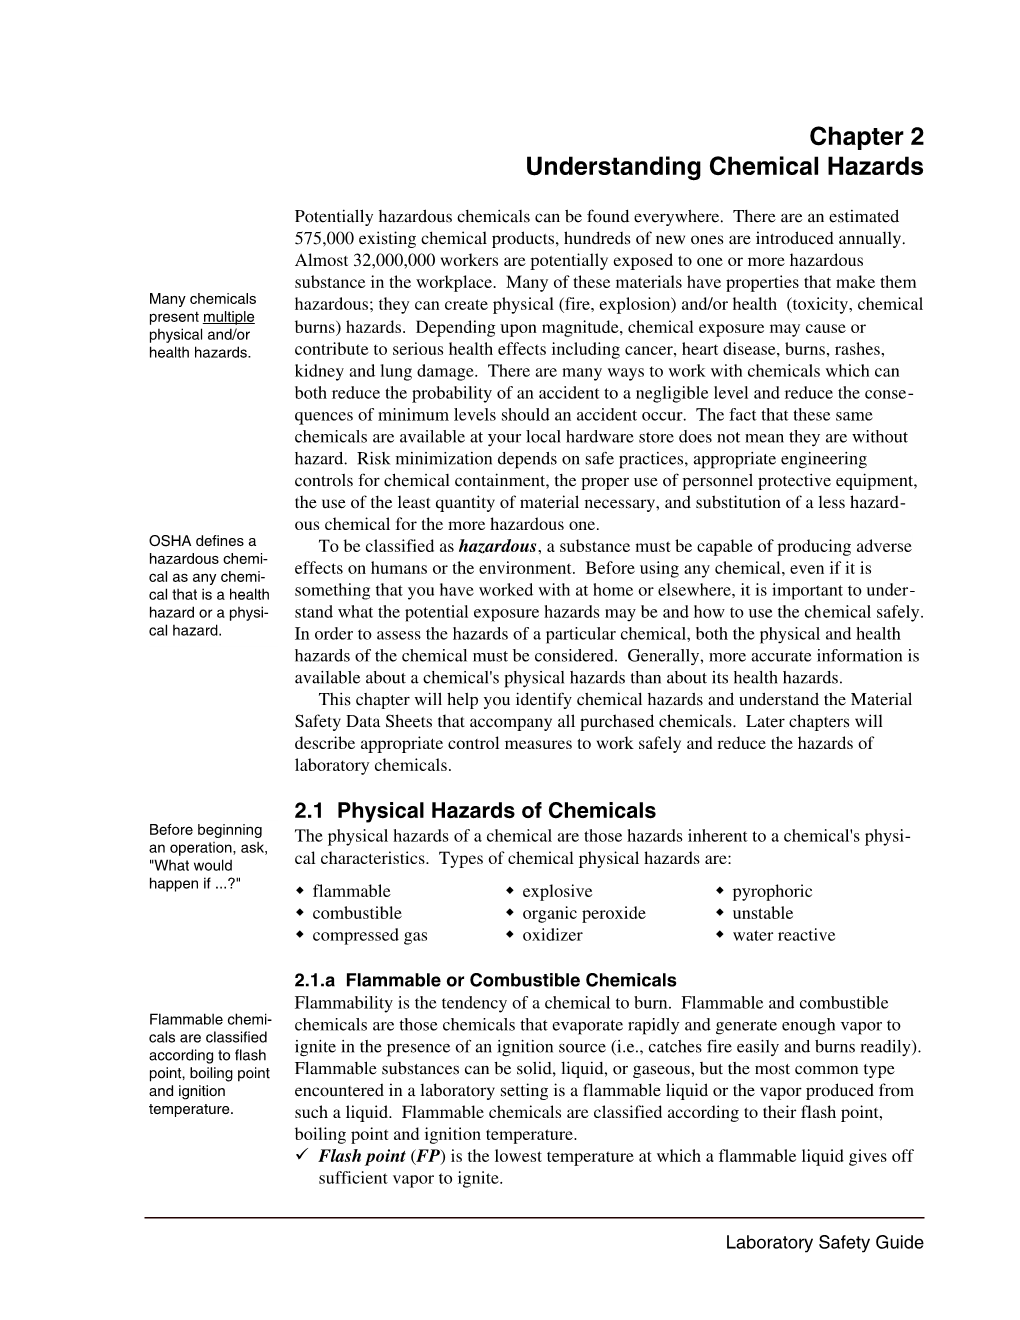 Chapter 2 Understanding Chemical Hazards